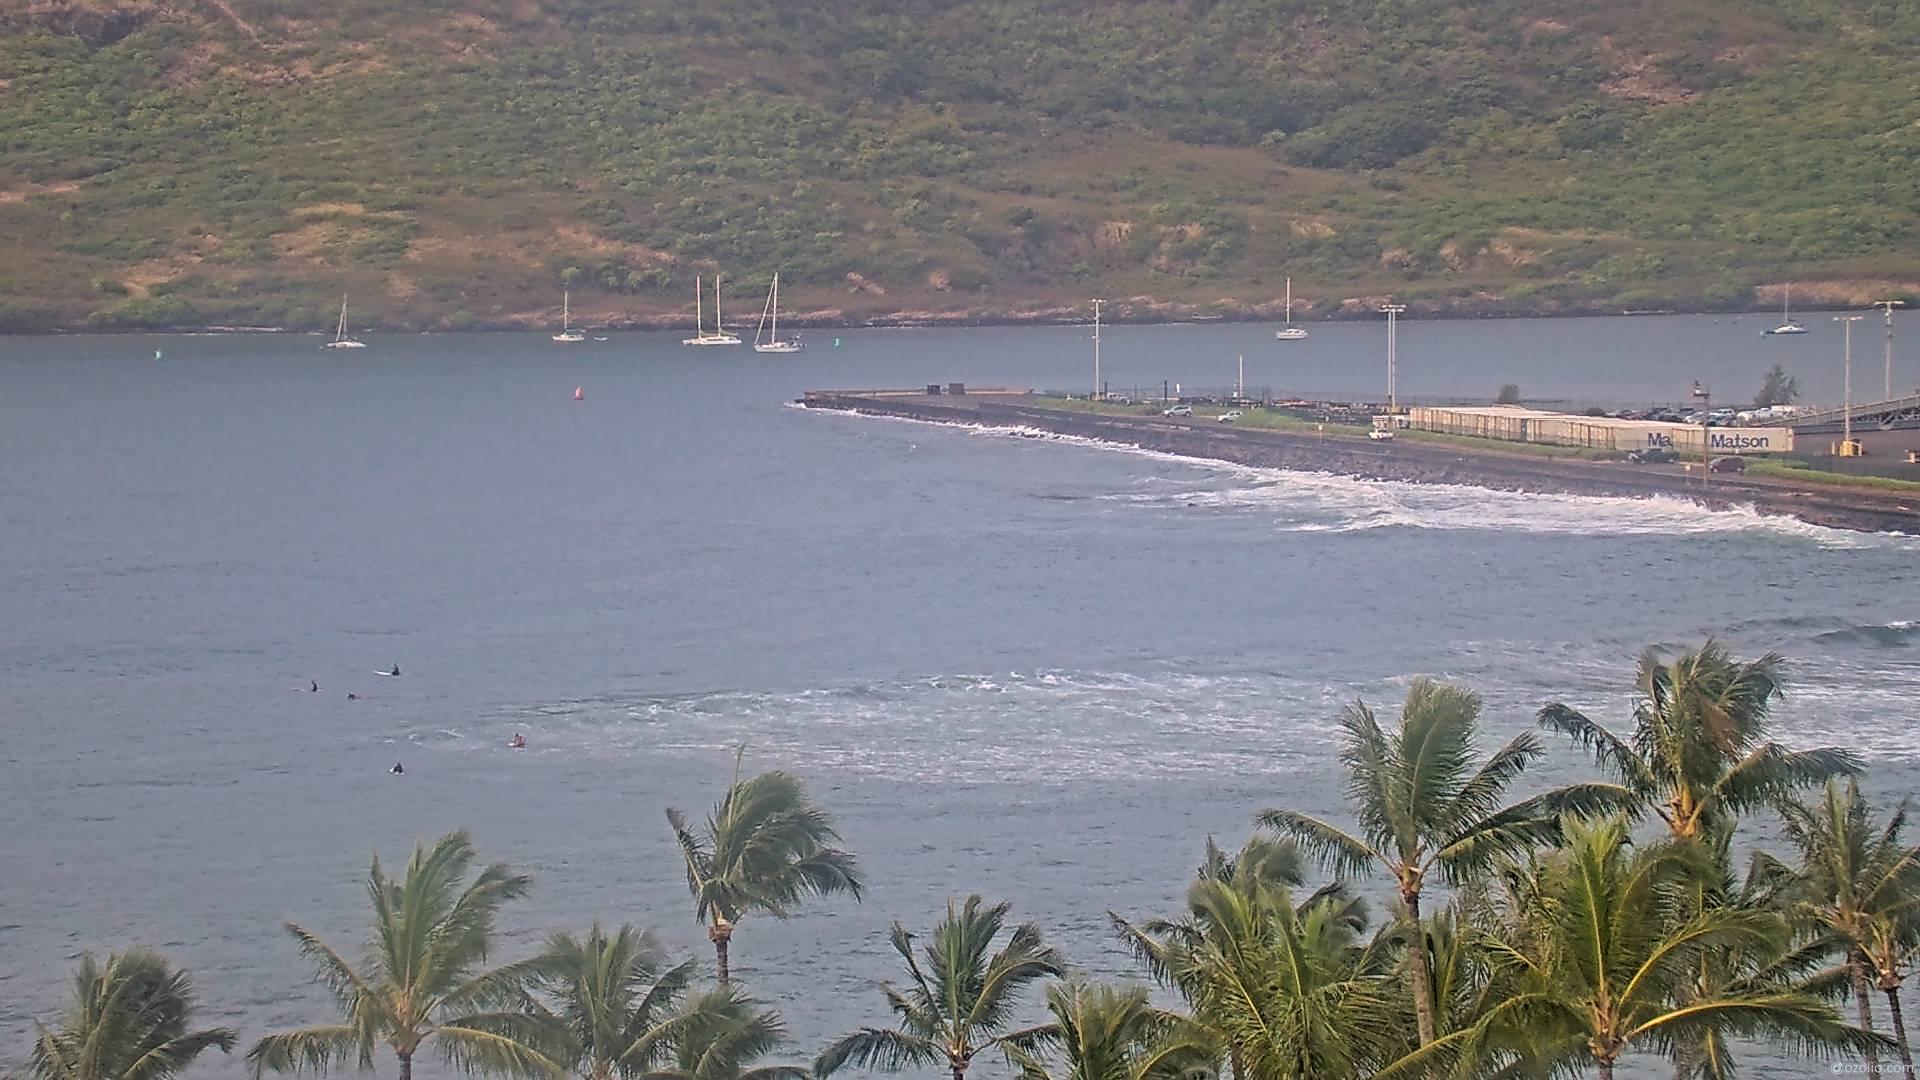 Lihue, Hawaii So. 07:14